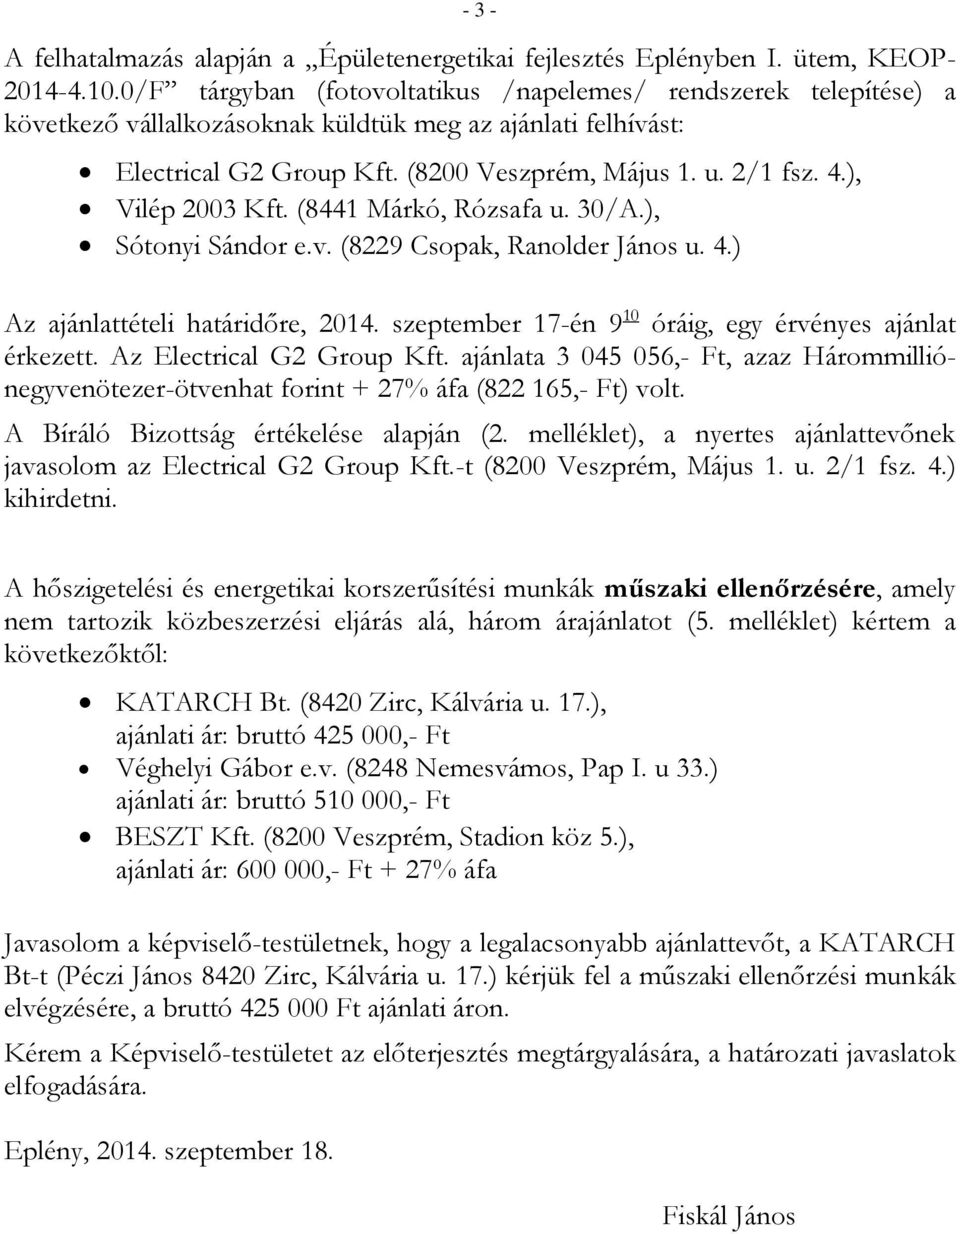 ), Vilép 2003 Kft. (8441 Márkó, Rózsafa u. 30/A.), Sótonyi Sándor e.v. (8229 Csopak, Ranolder János u. 4.) Az ajánlattételi határidőre, 2014.